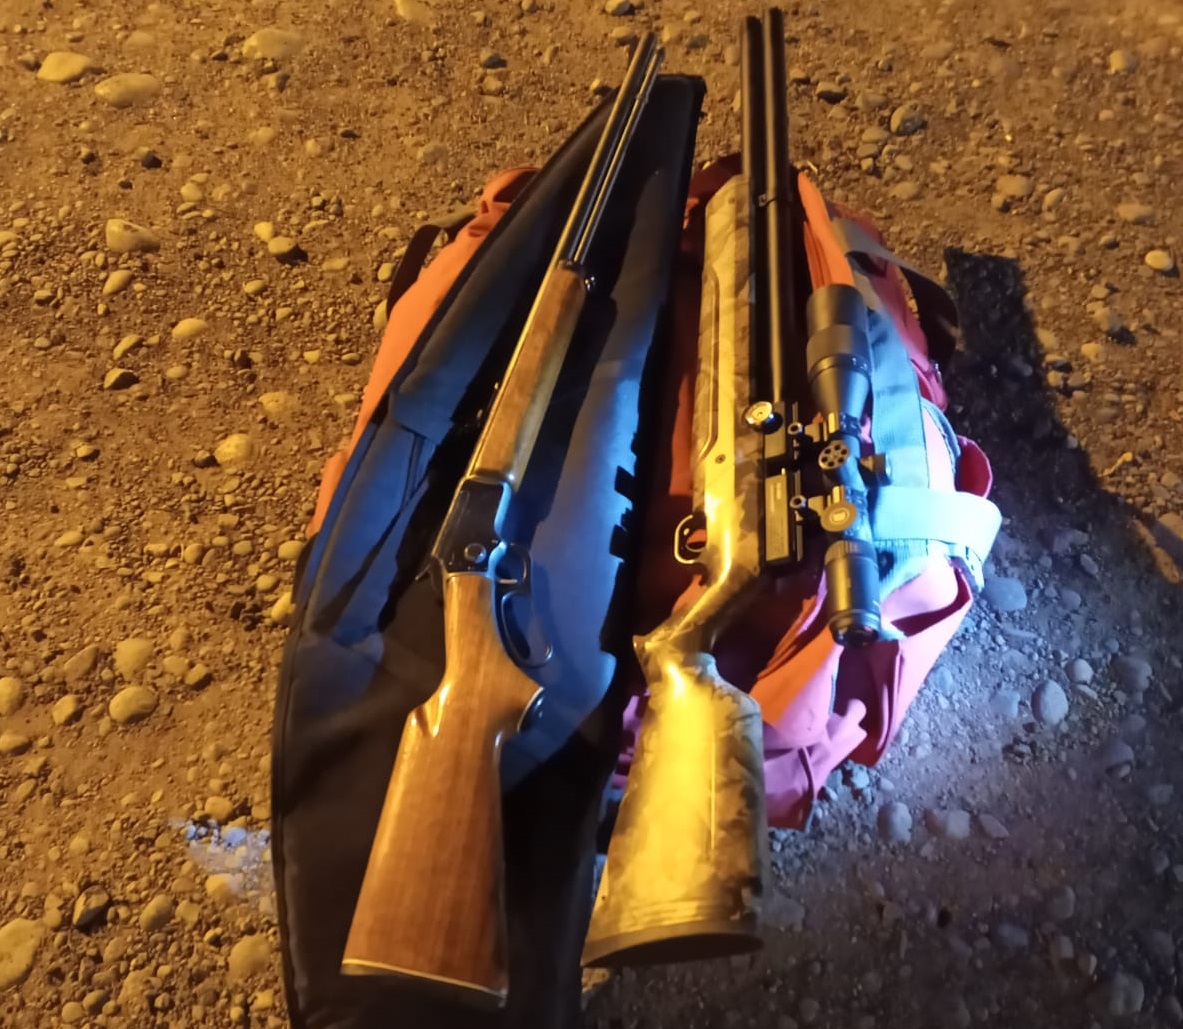 Dos rifles con municiones fueron secuestrados anoche en Ruta 22. Foto: gentileza